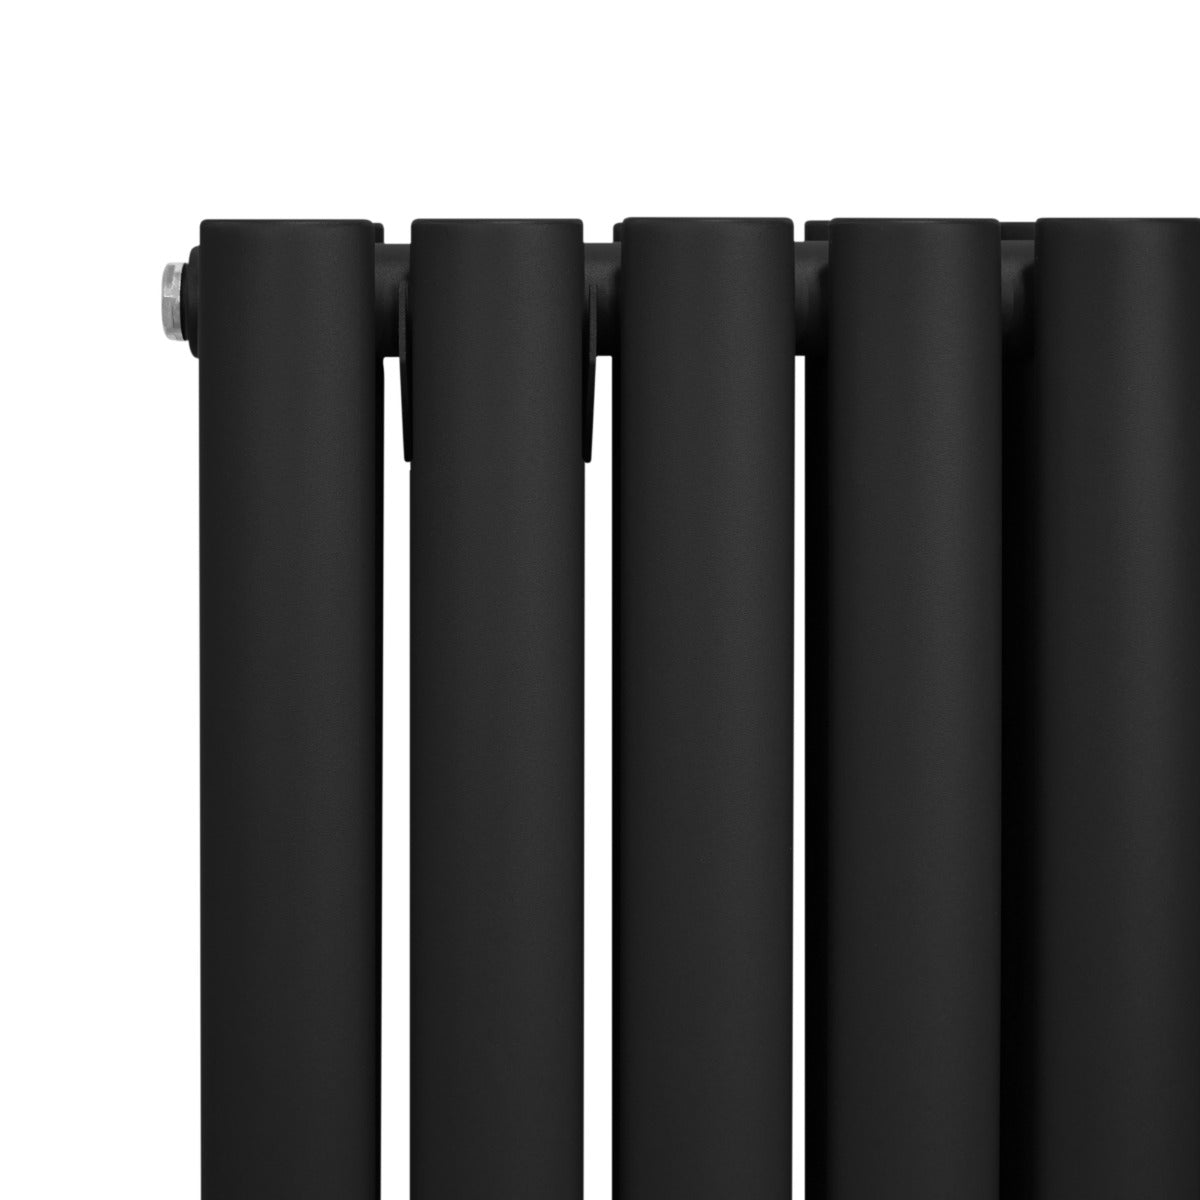 Radiador De Columna Ovalada - 1800mm x 360mm - Negro